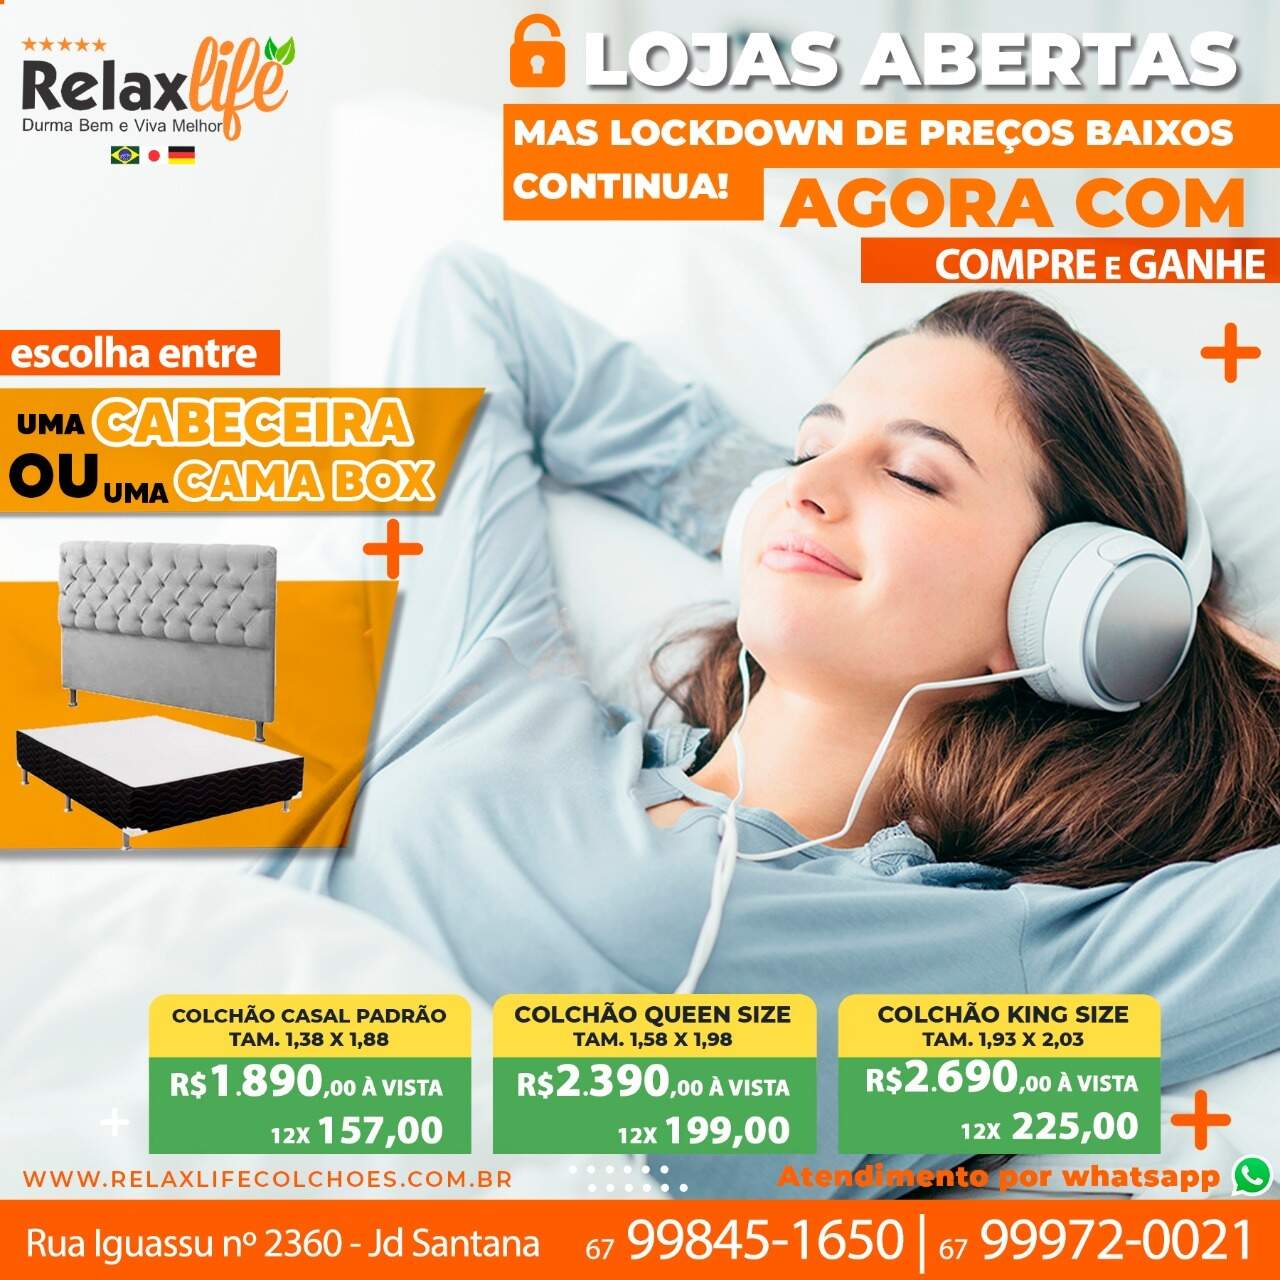 Dourados - A Relax Life também tem loja em Dourados, na Rua Iguassu, 2360 no Jardim Santana